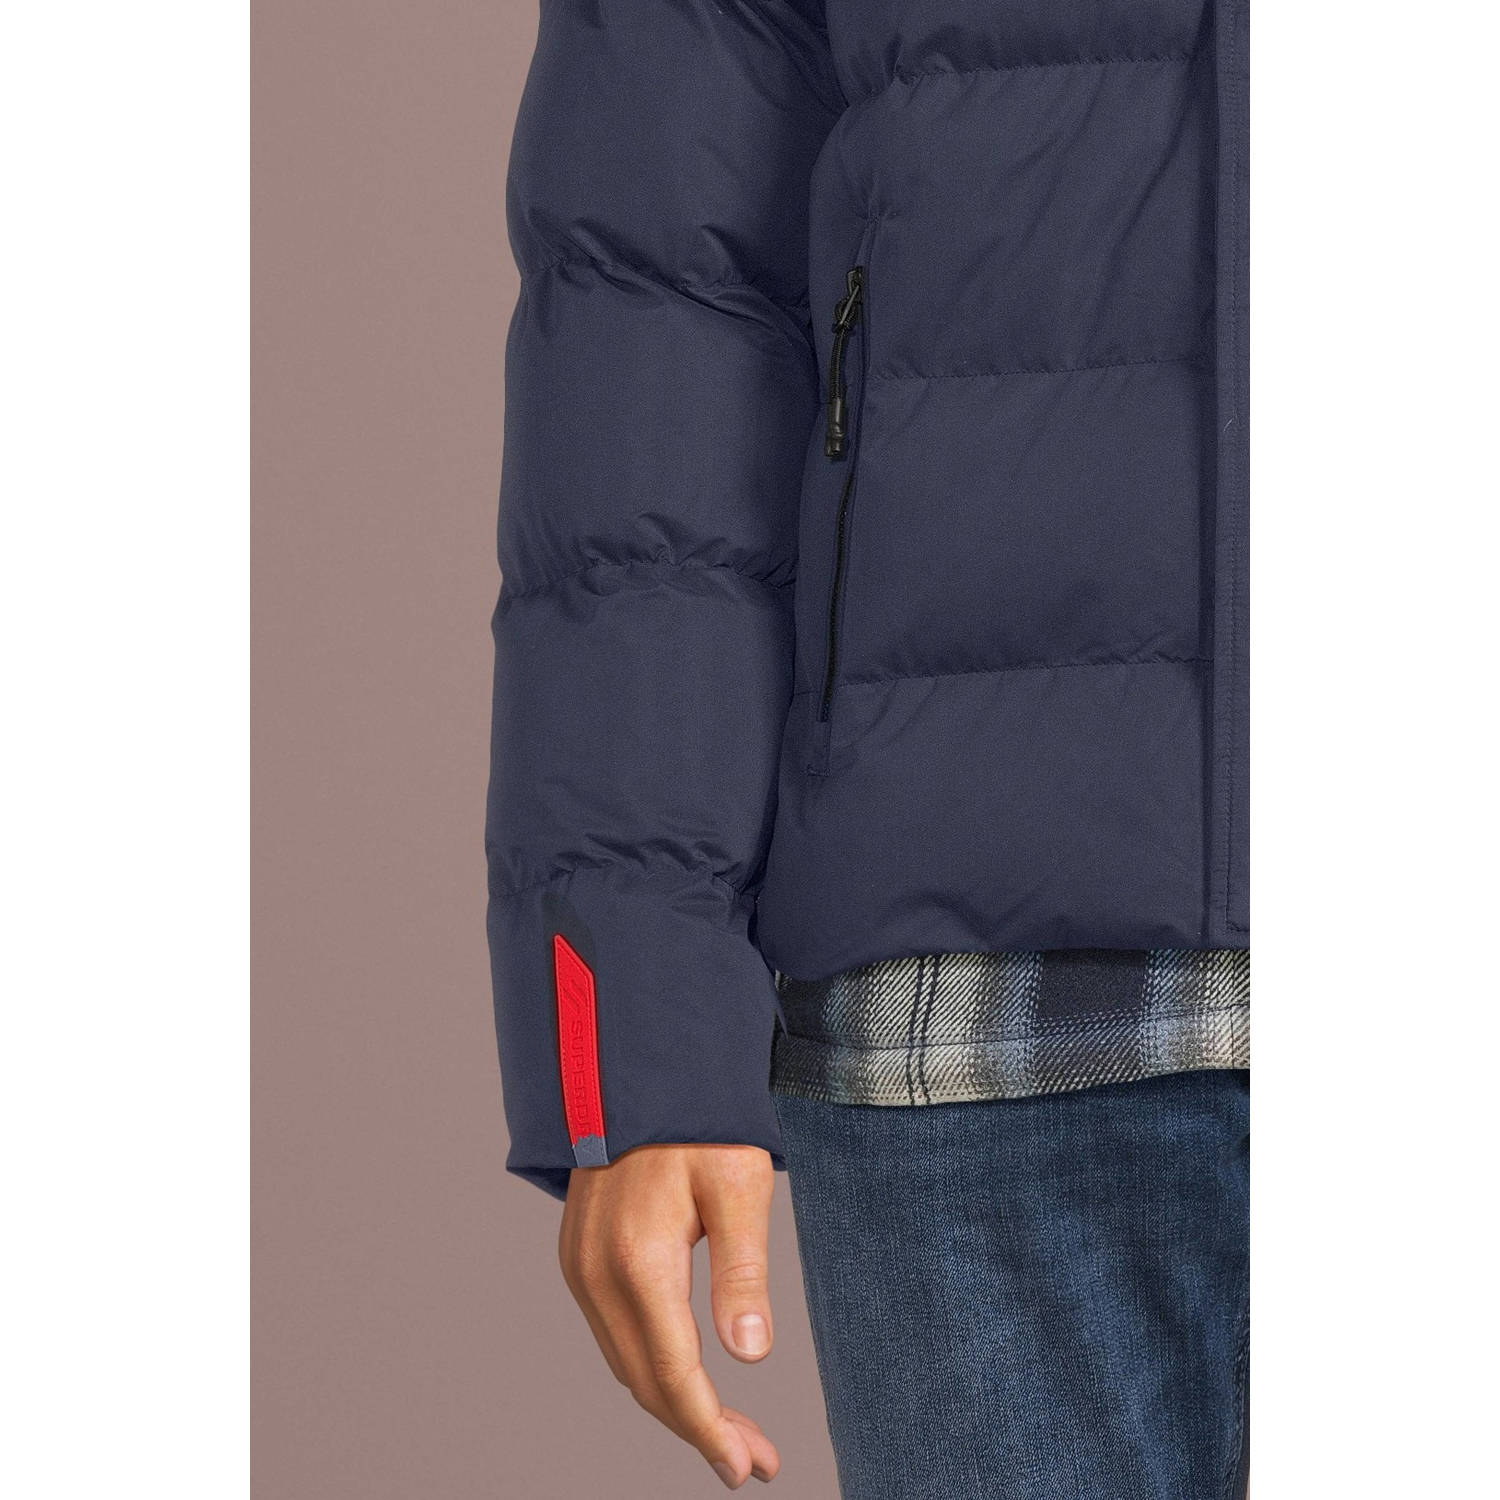 Superdry gewatteerde jas met logo donkerblauw